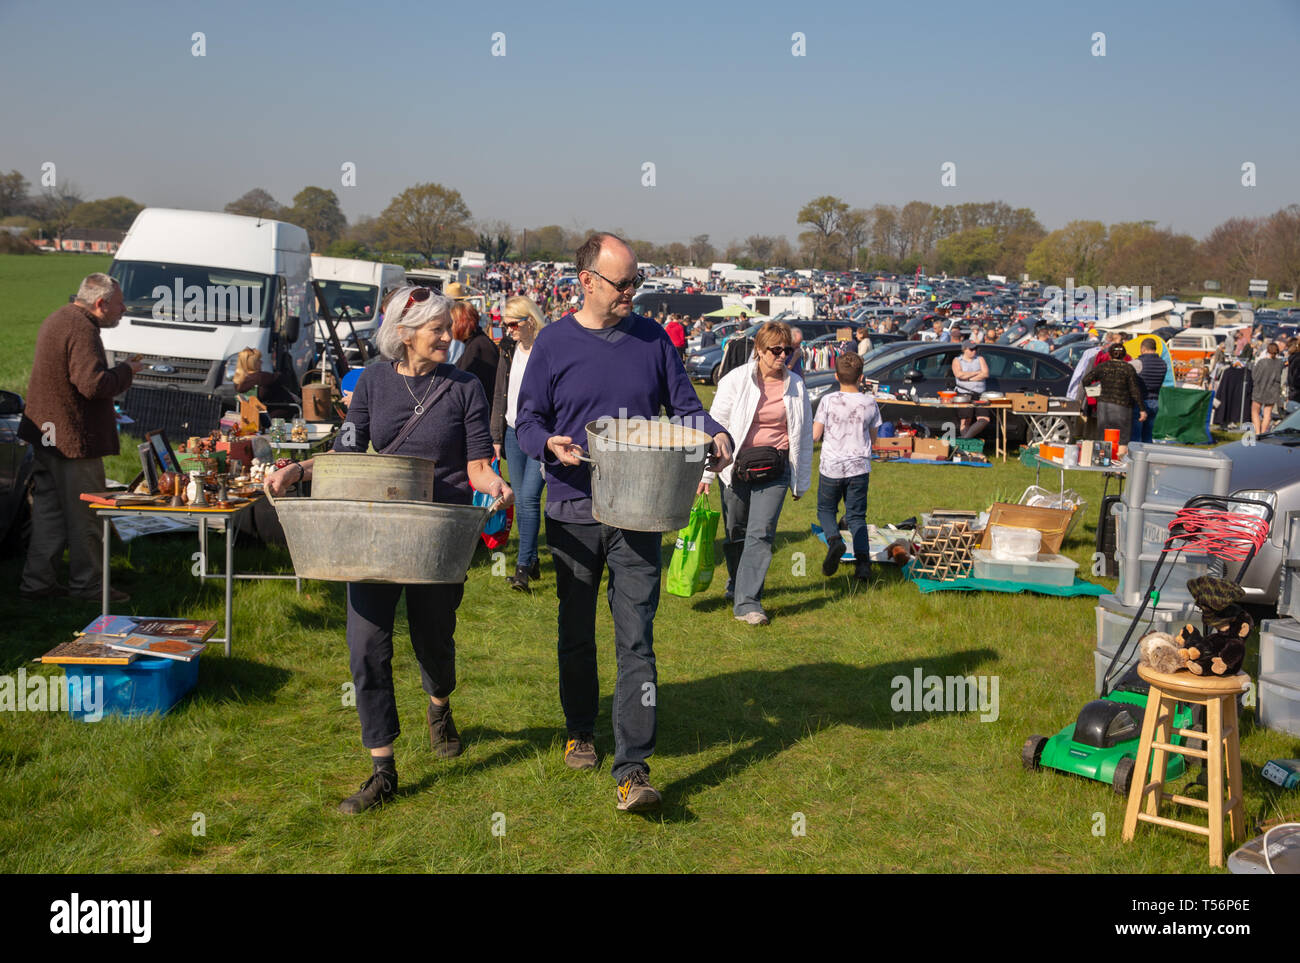 Flohmarkt in Suffolk. Leute fahren ihre Autos und Haushaltswaren verkaufen und versuchen, ein wenig extra Geld zu verdienen. Stockfoto